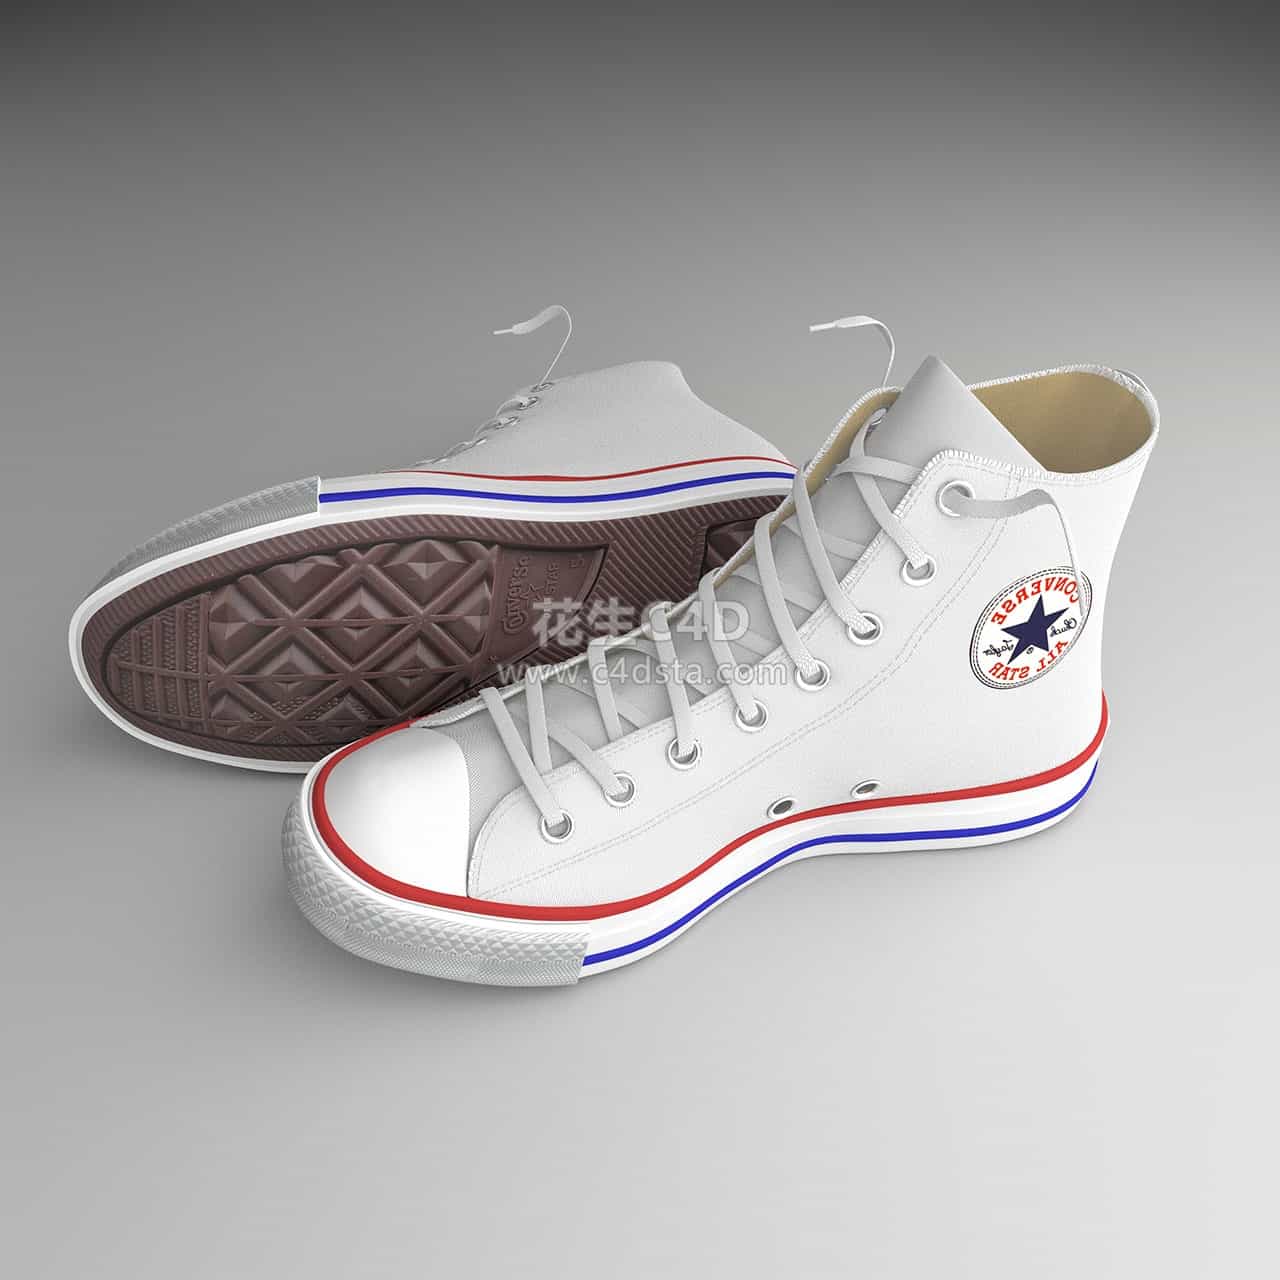 三维模型- 匡威经典白色款高帮帆布鞋模型 626CG资源站